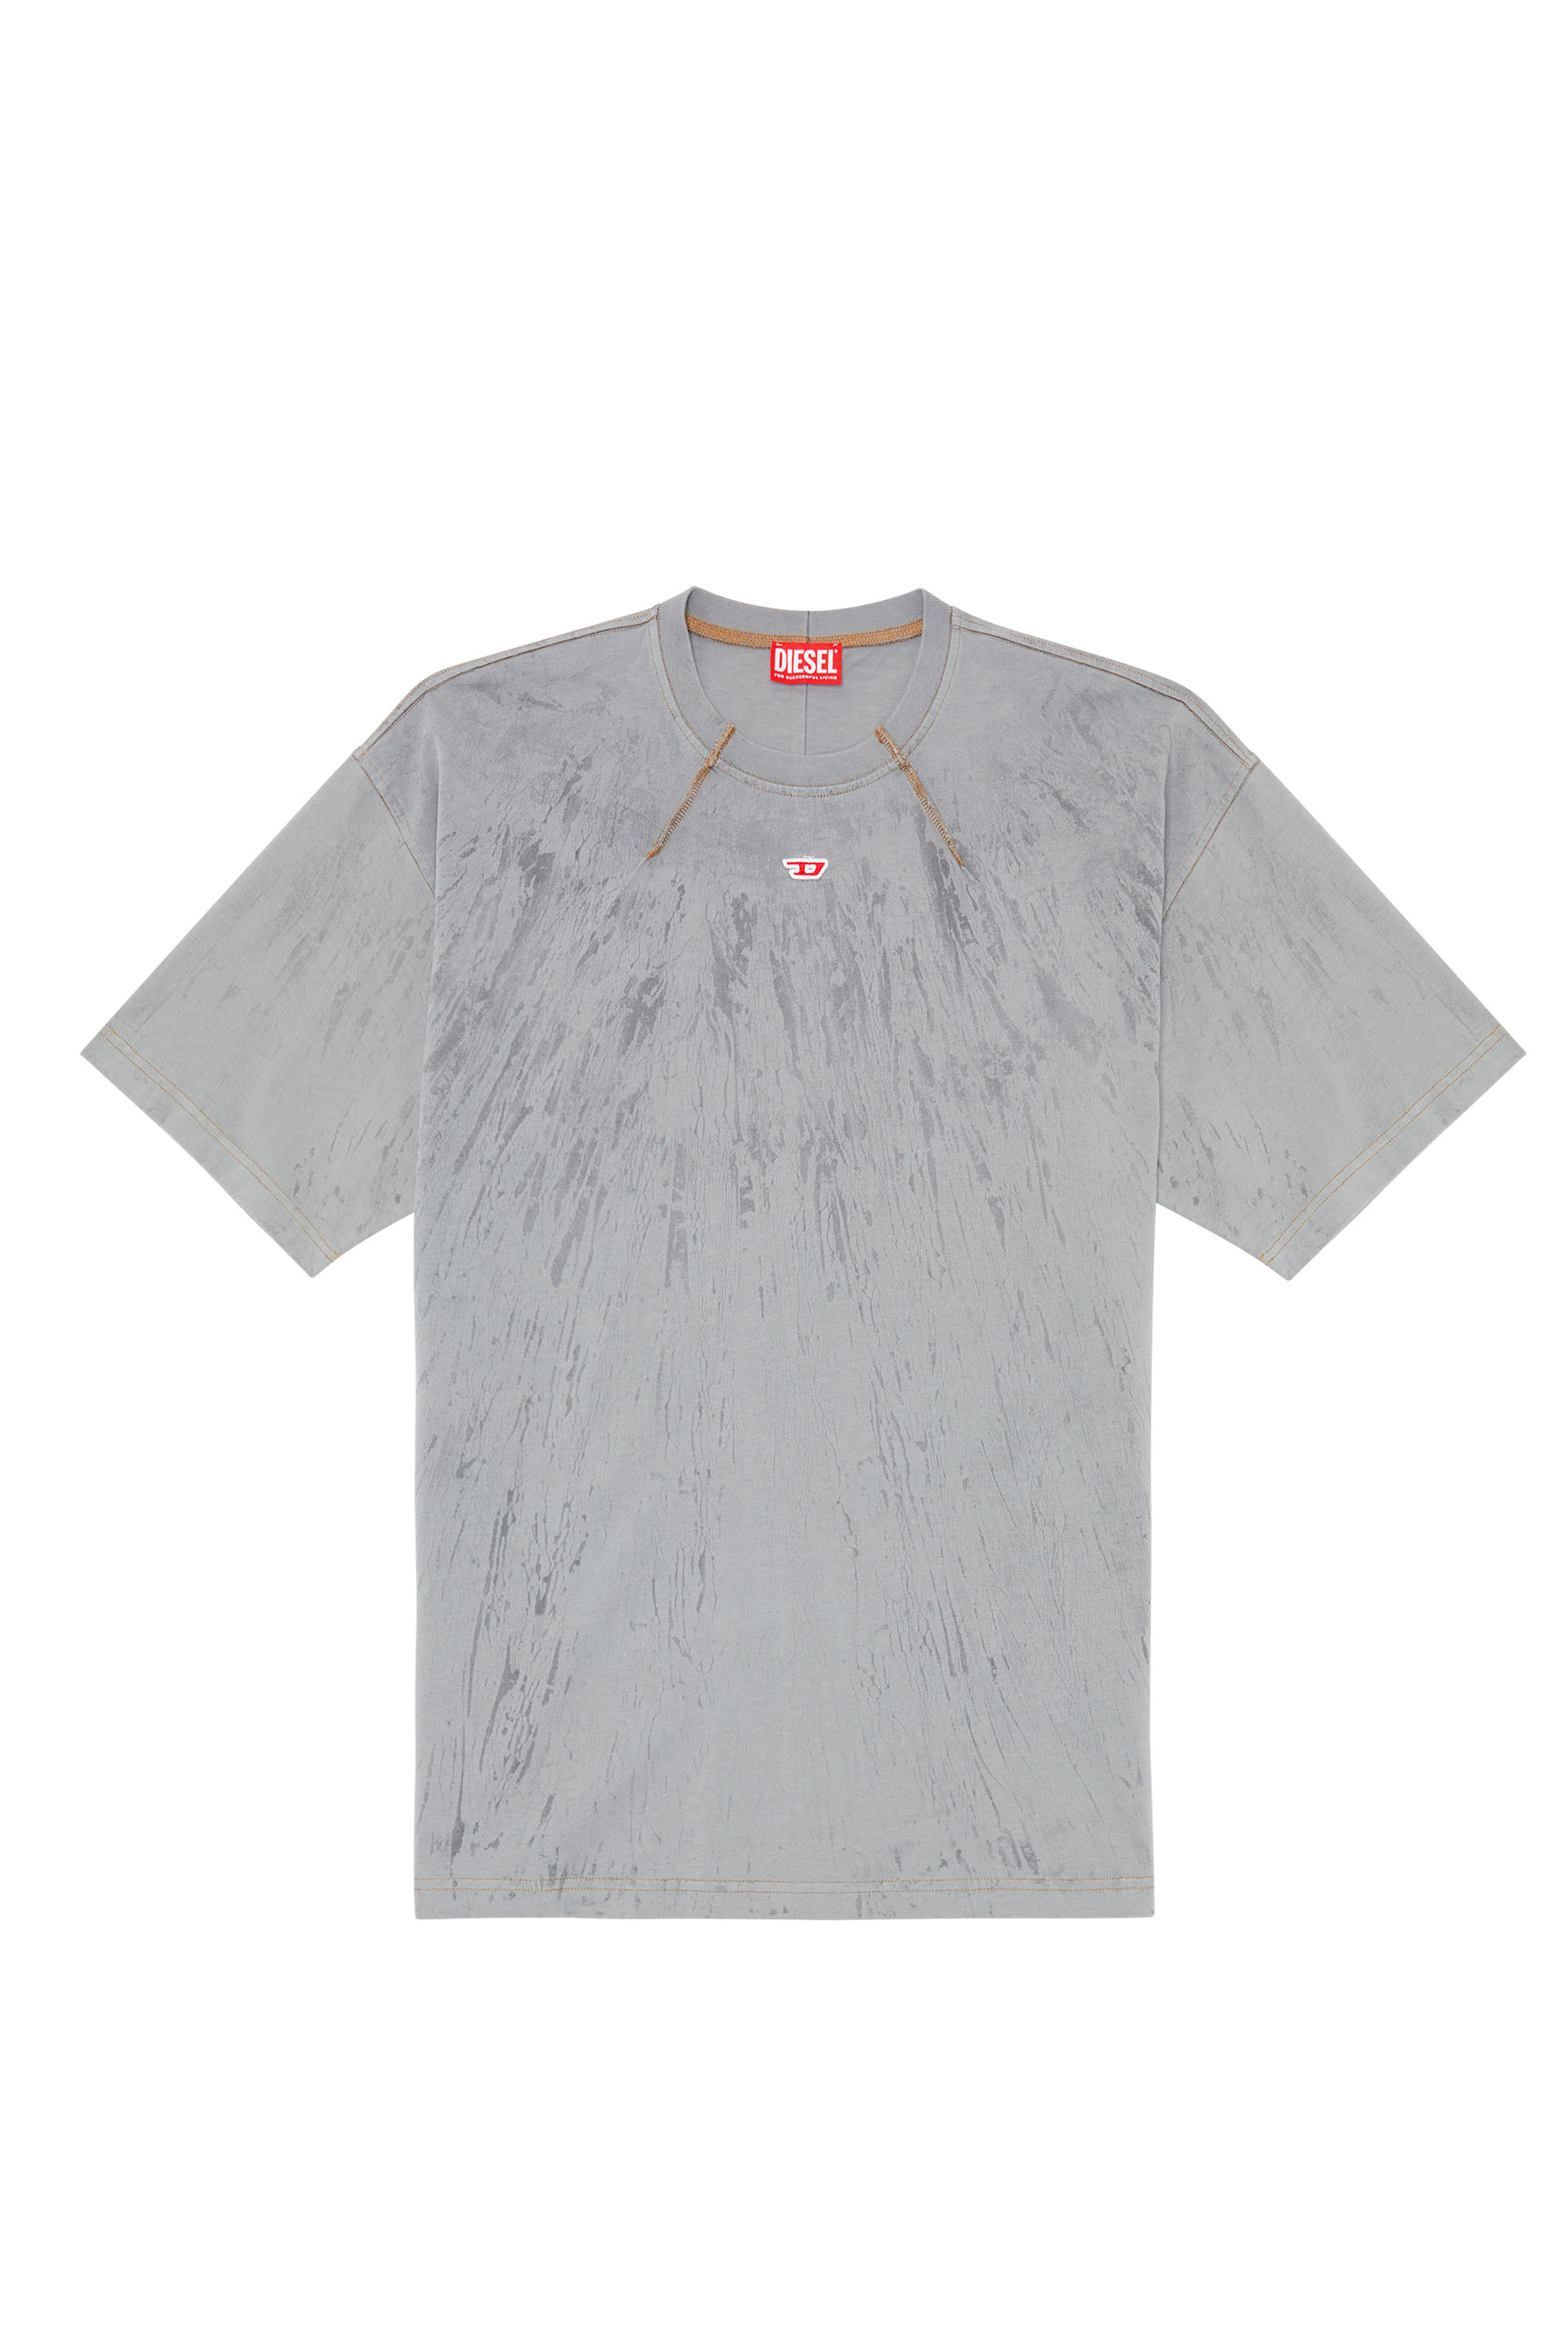 Diesel - T-COS, Homme T-shirt en jersey effet plâtre in Gris - Image 4